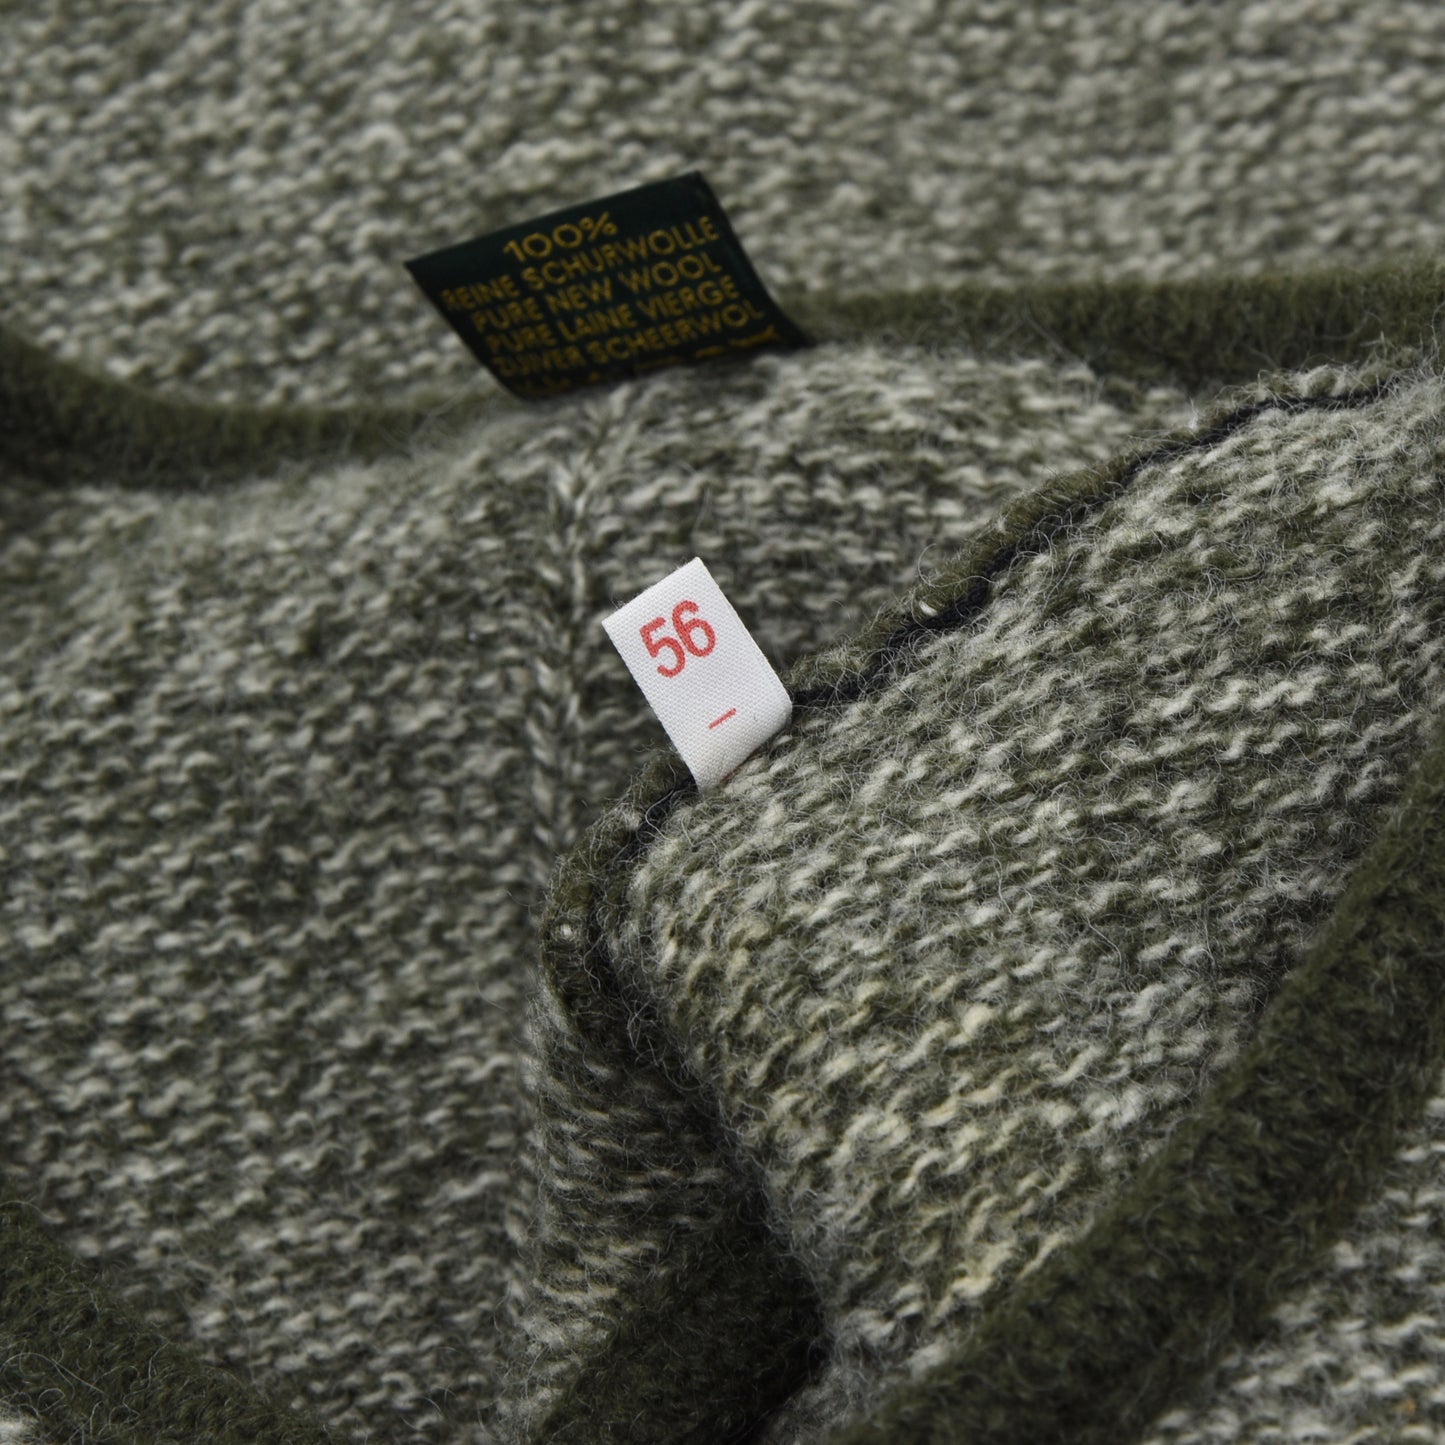 St. Peter Trachten Wool Sweater Vest/Trachtenweste Size 56 - Green